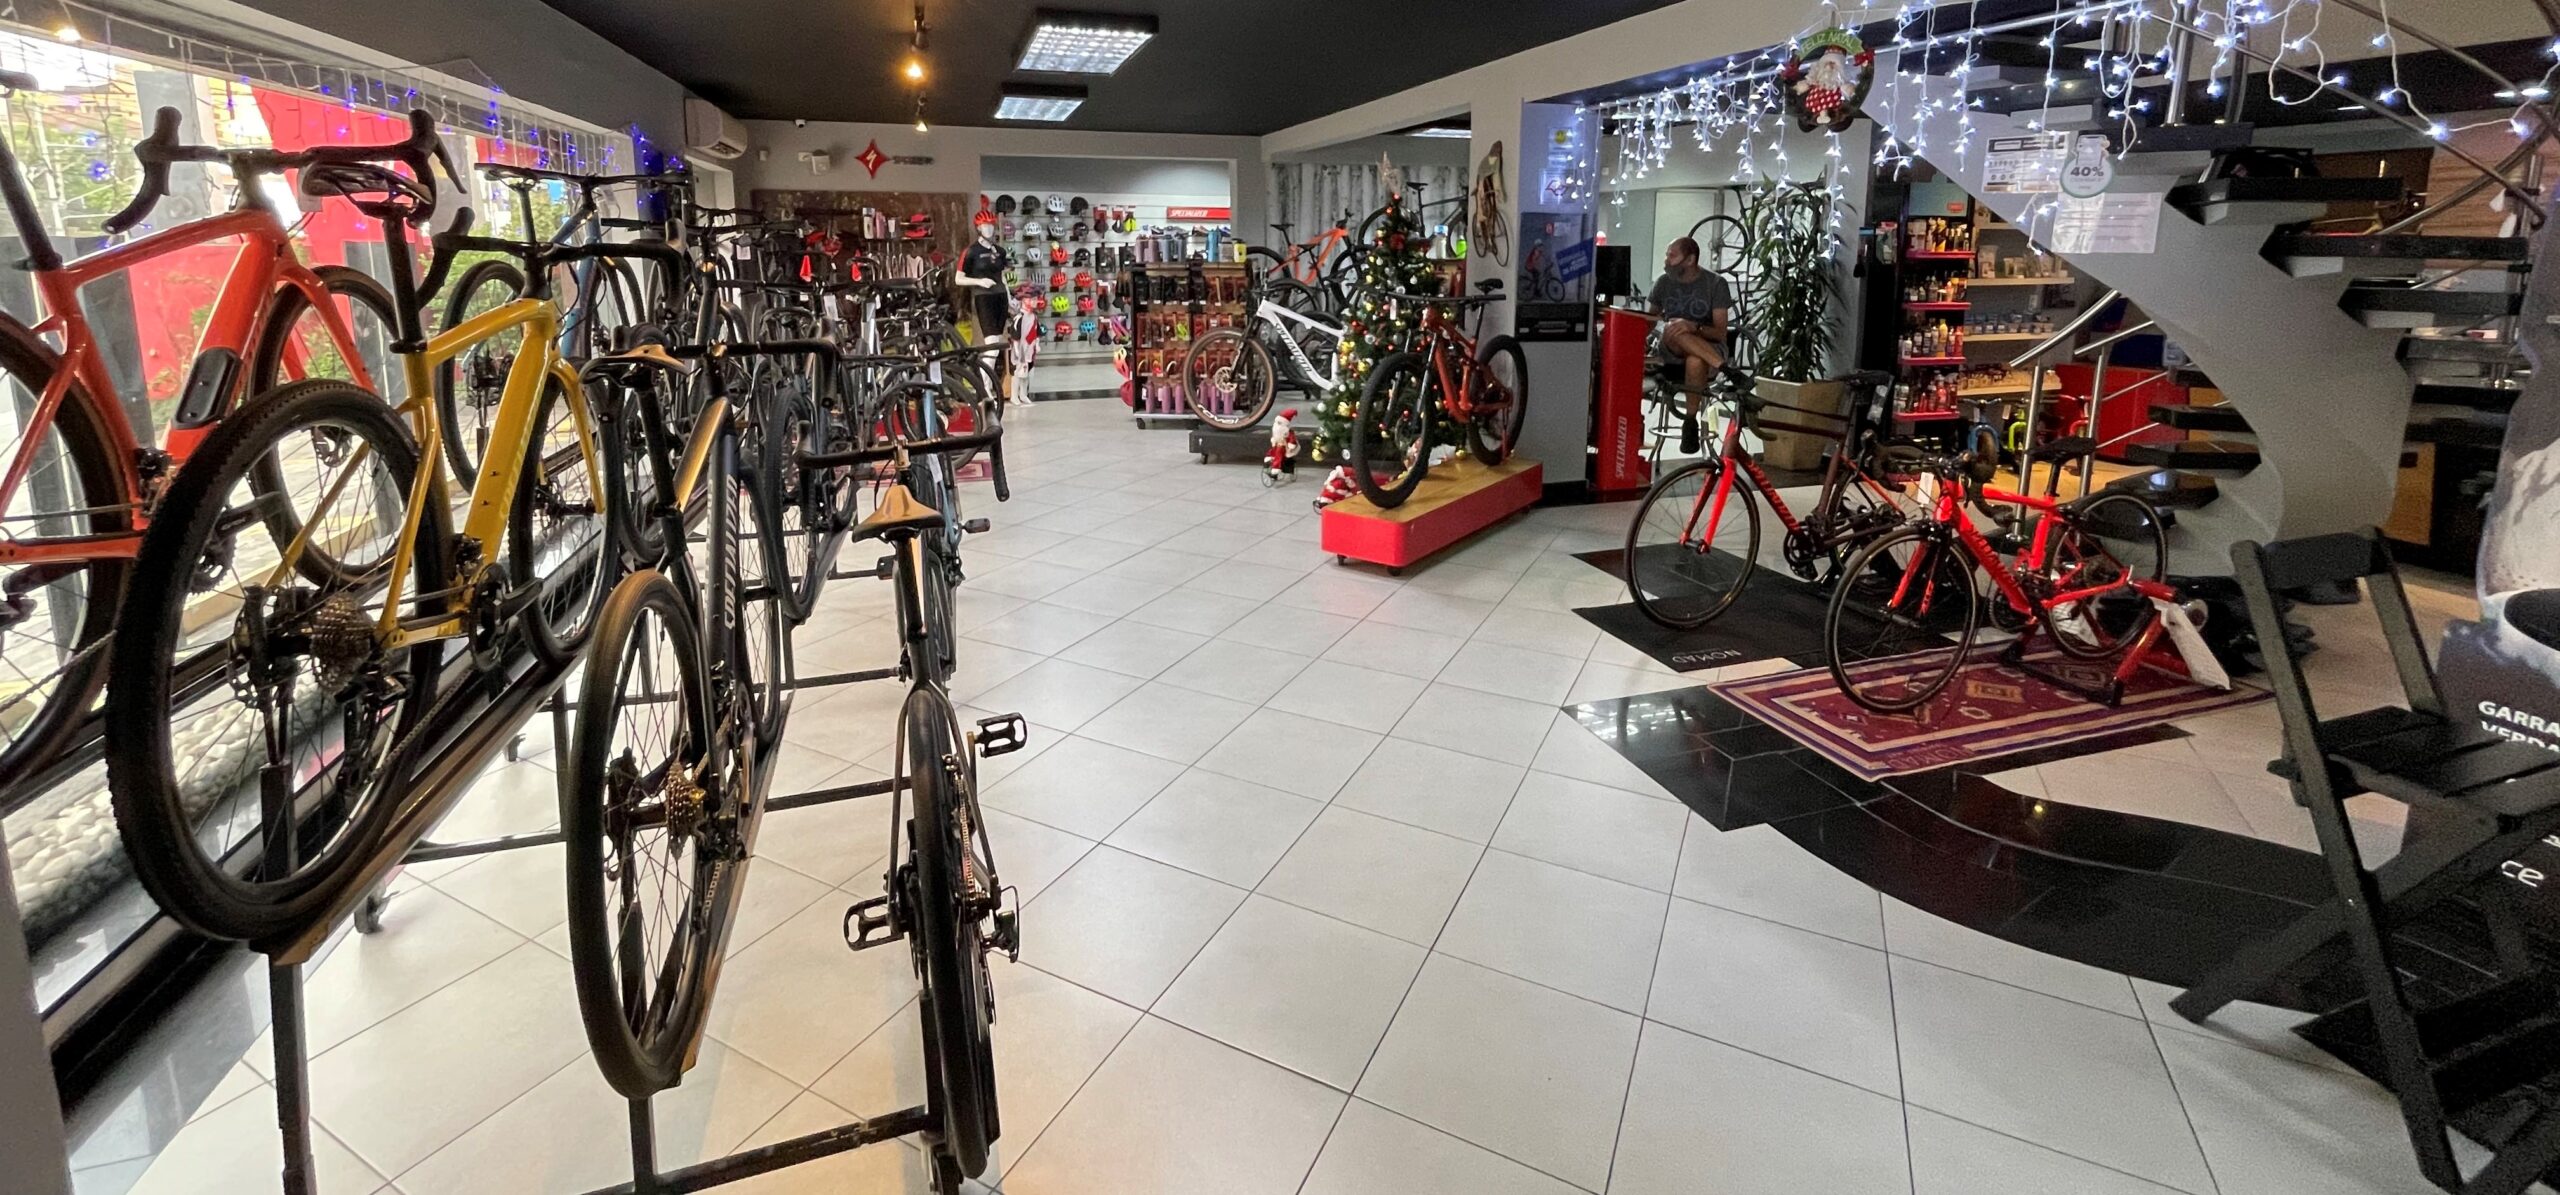 Serviço de mecânica cresce 30% nas lojas de bicicletas